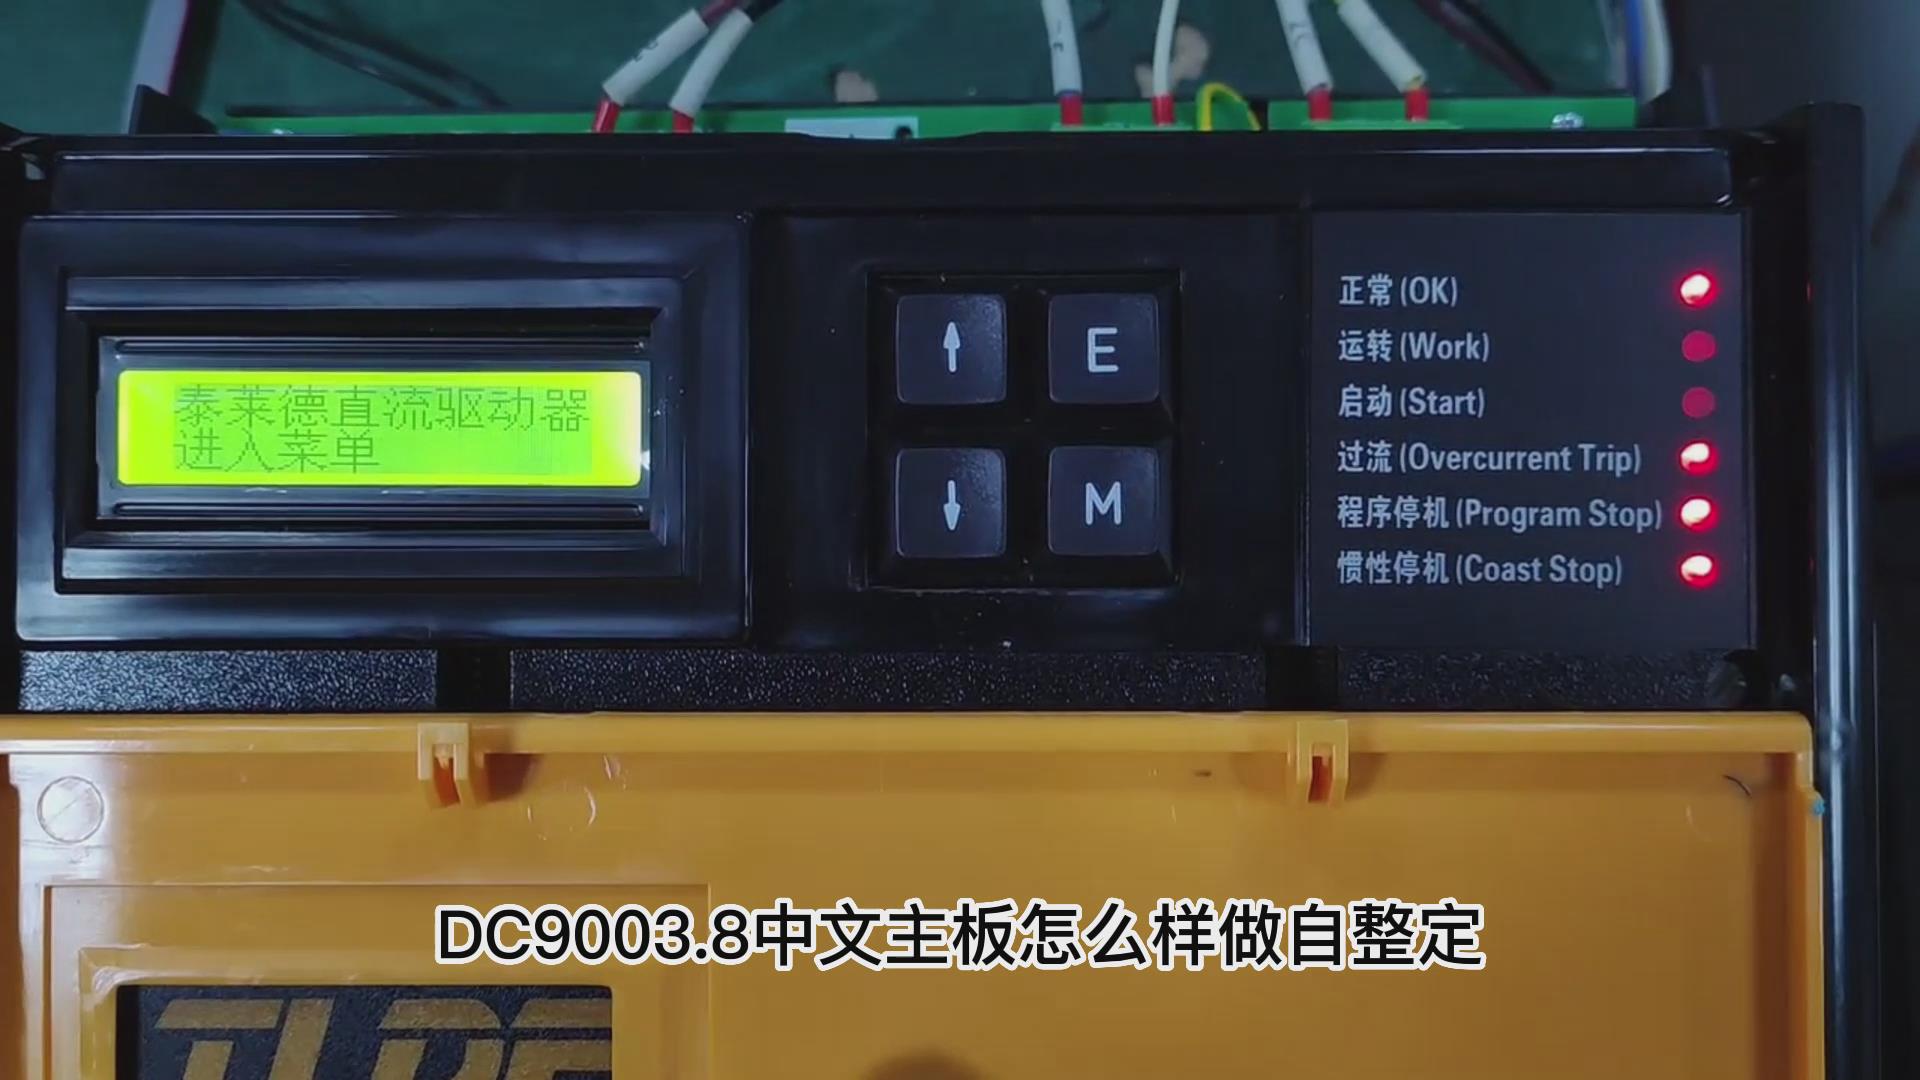 DC900C直流驱动器如何做自动调谐？ 仁控机电！